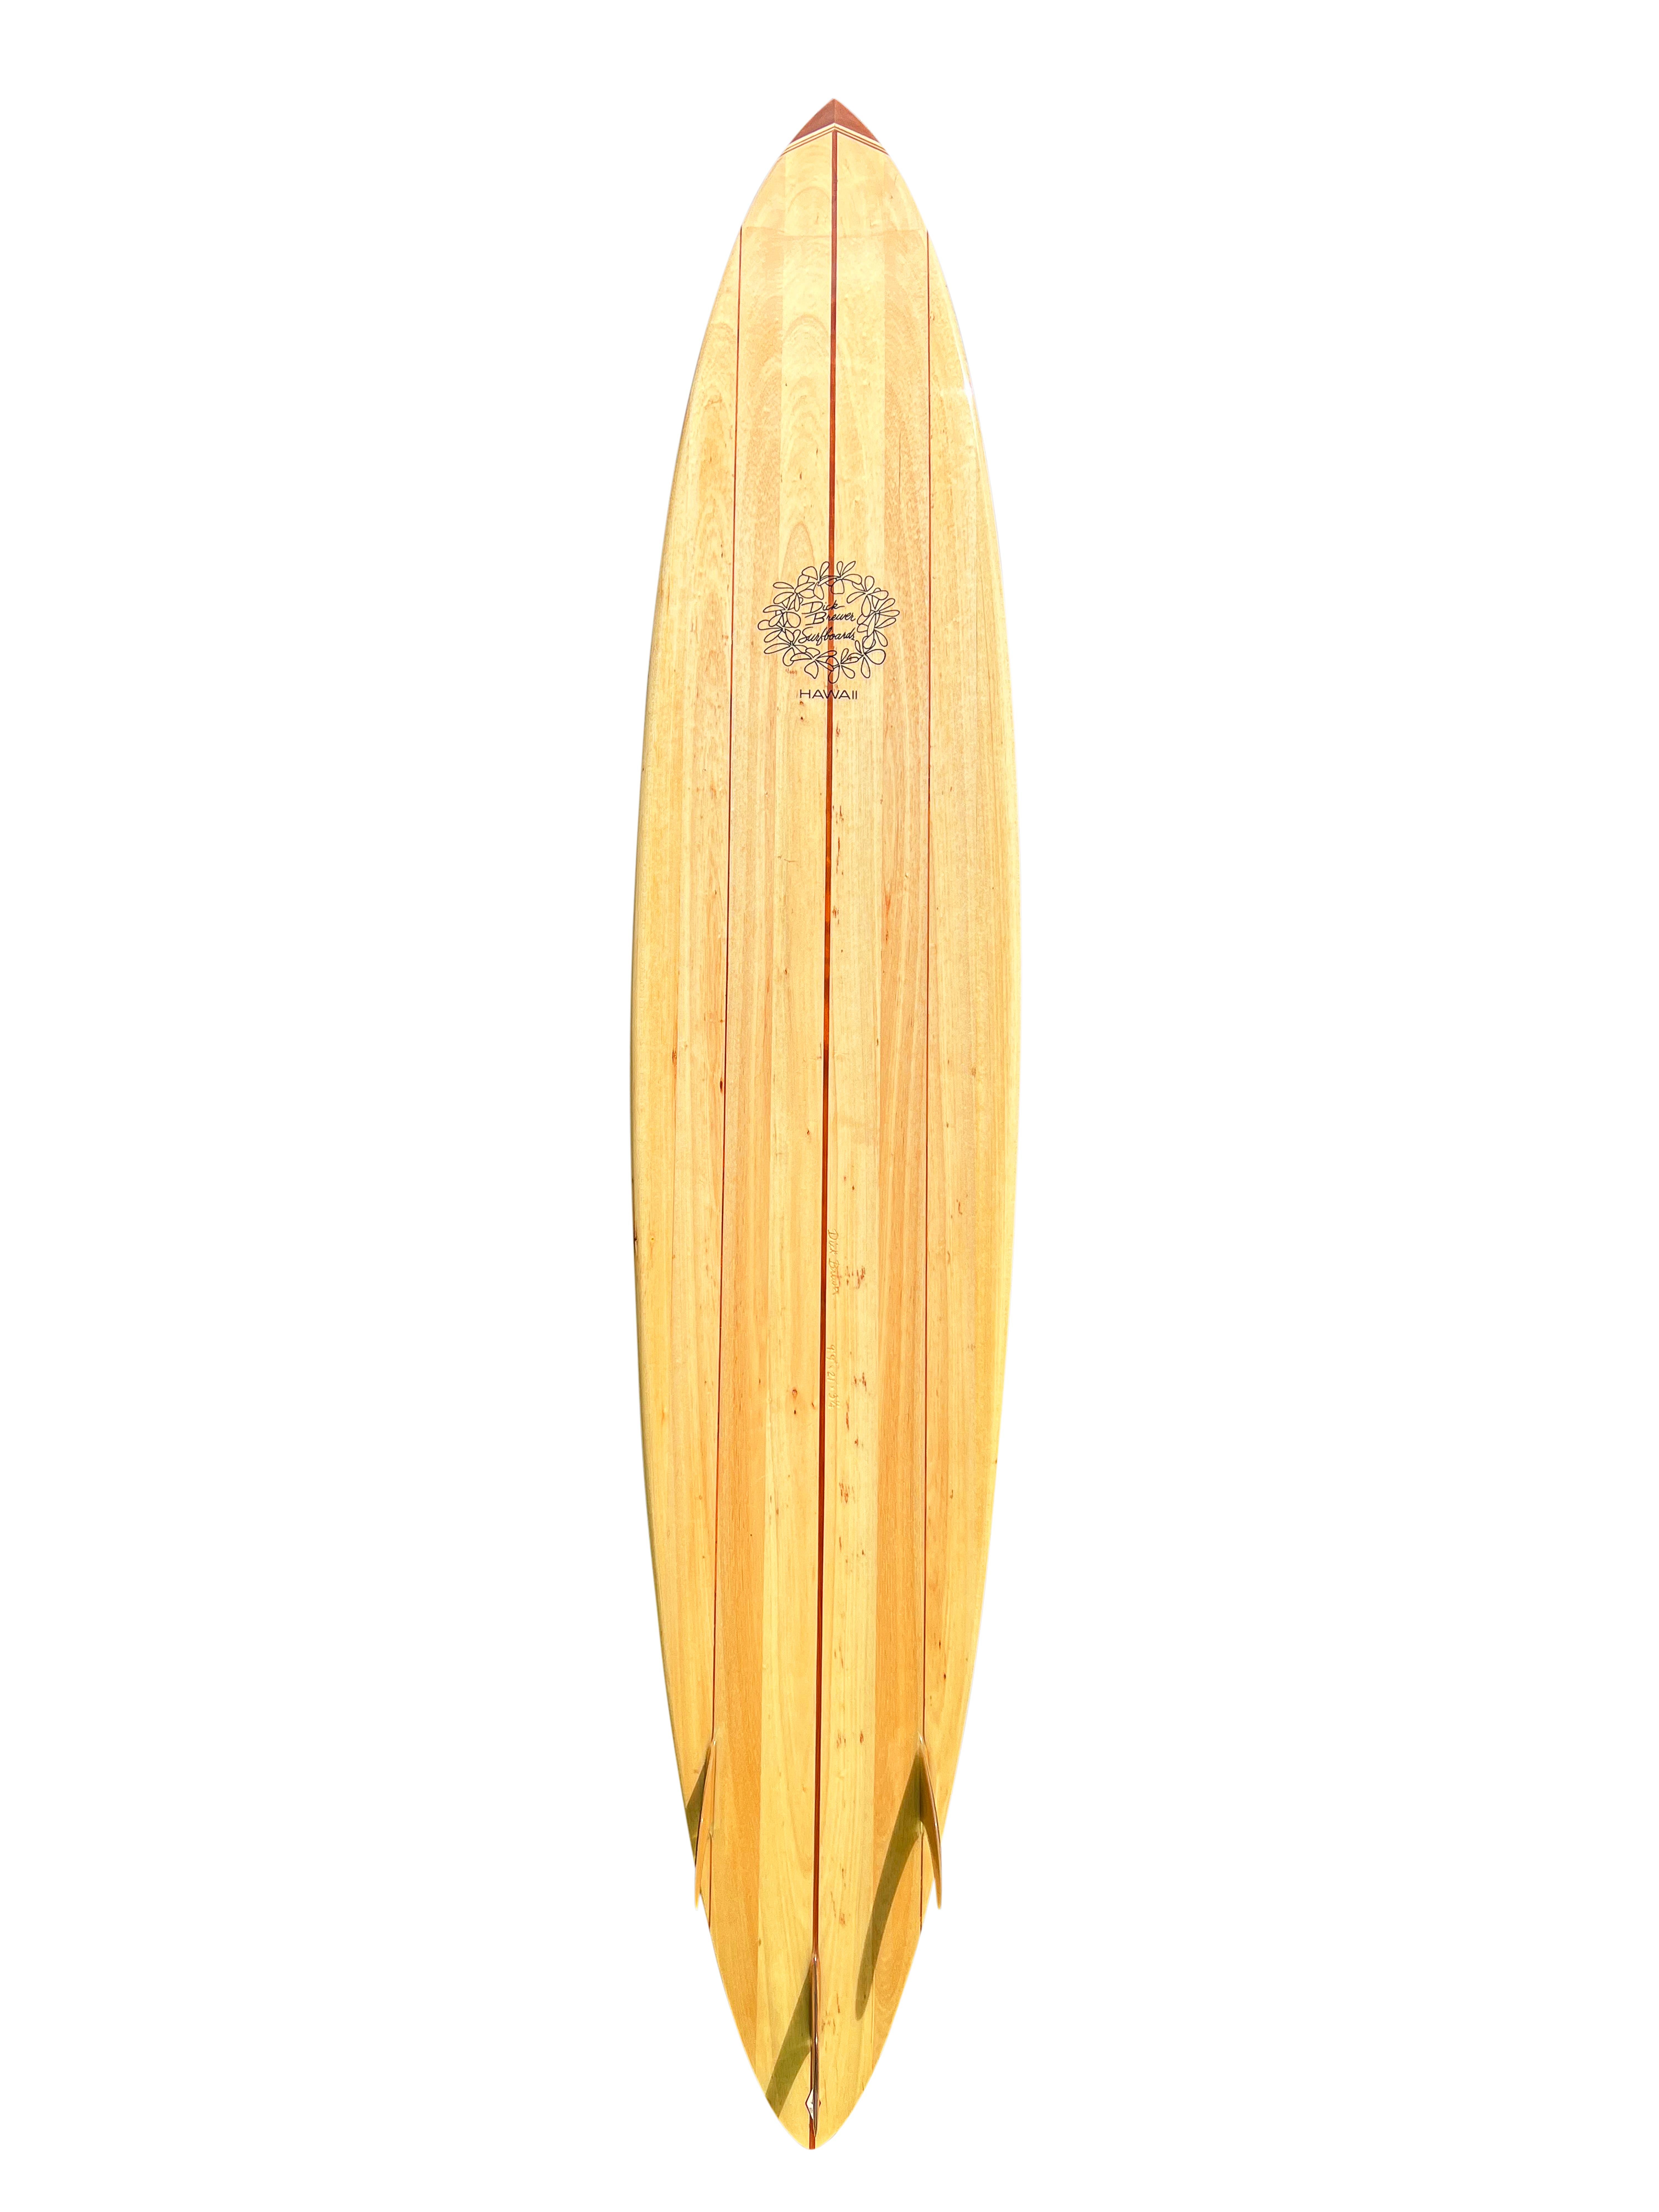 Big-Wave-Balsaholz-Pintail-Surfbrett, geshaped vom verstorbenen Dick Brewer (1936-2022) in den frühen 2000er Jahren.  Mit Tri-Stringer-Design, schönen Flossen aus hawaiianischem Koa-Holz und einem 10-teiligen Nasenblock aus Holz. Ein bemerkenswertes